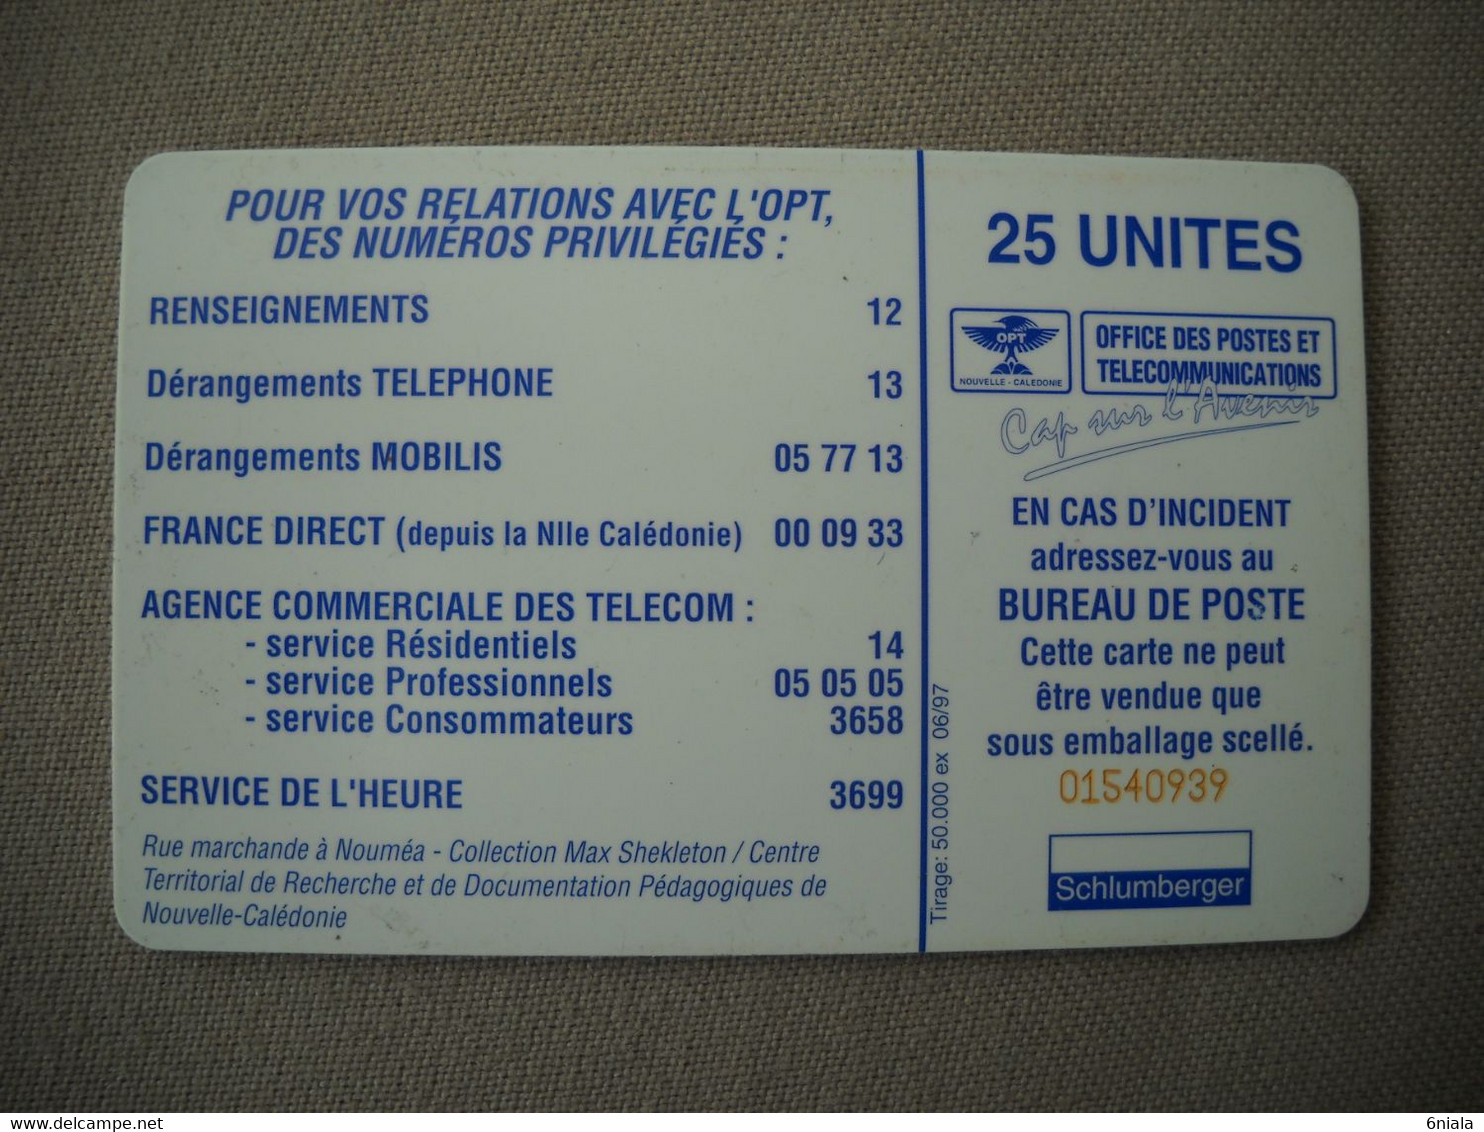 6996 Télécarte Collection NOUVELLE CALEDONIE   LIETARD PINELLI Vélos  Ancêtre  Voiture( Recto Verso)  Carte Téléphonique - Neukaledonien